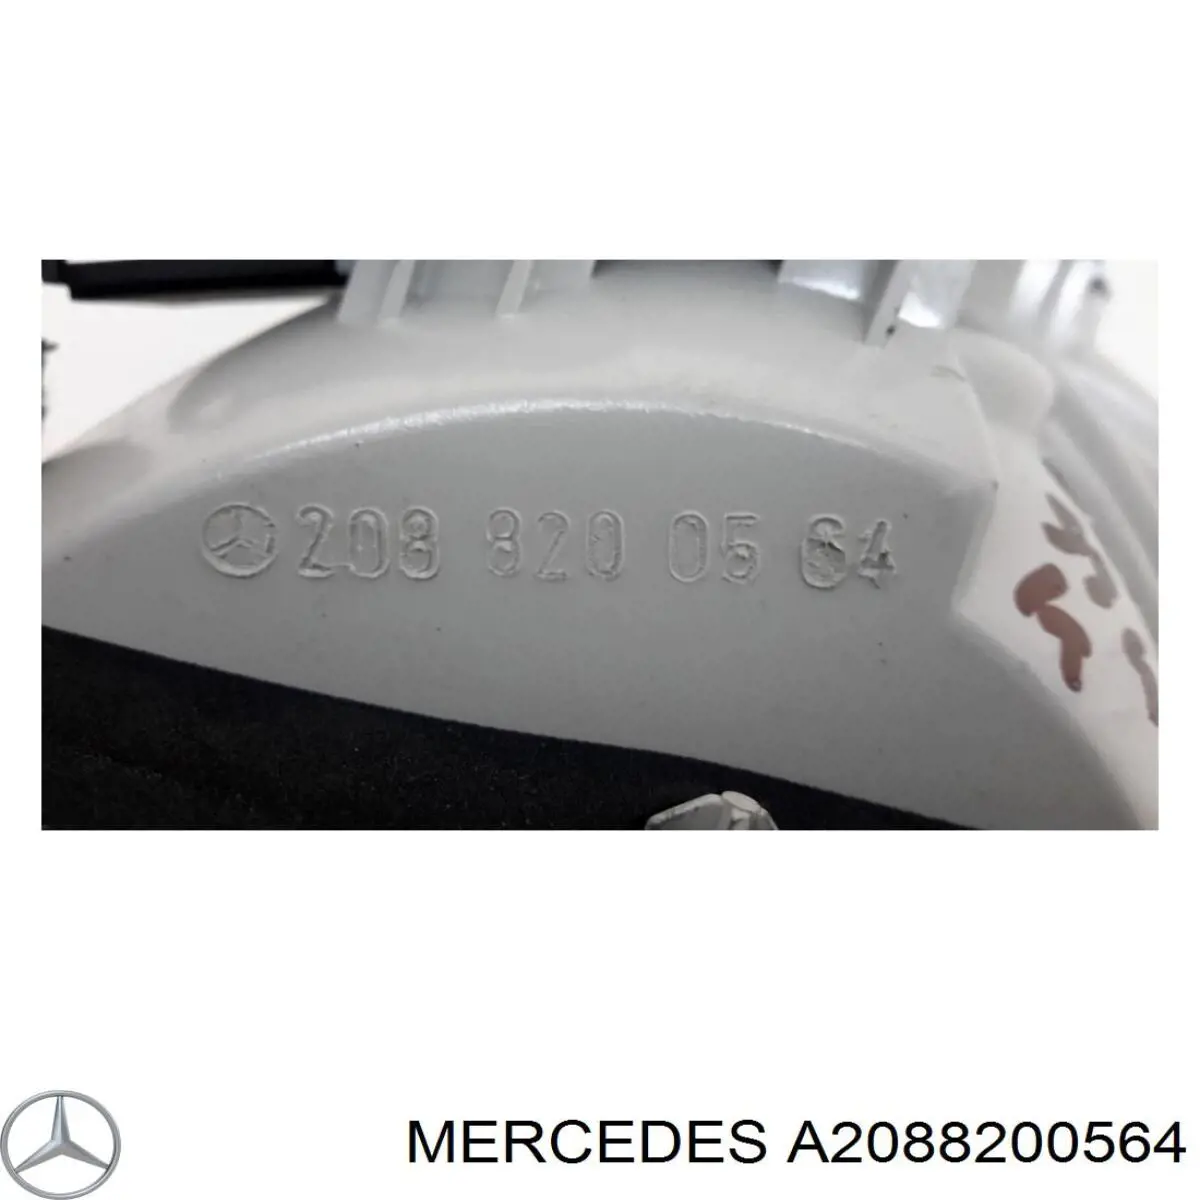 2088200564 Mercedes piloto trasero interior izquierdo